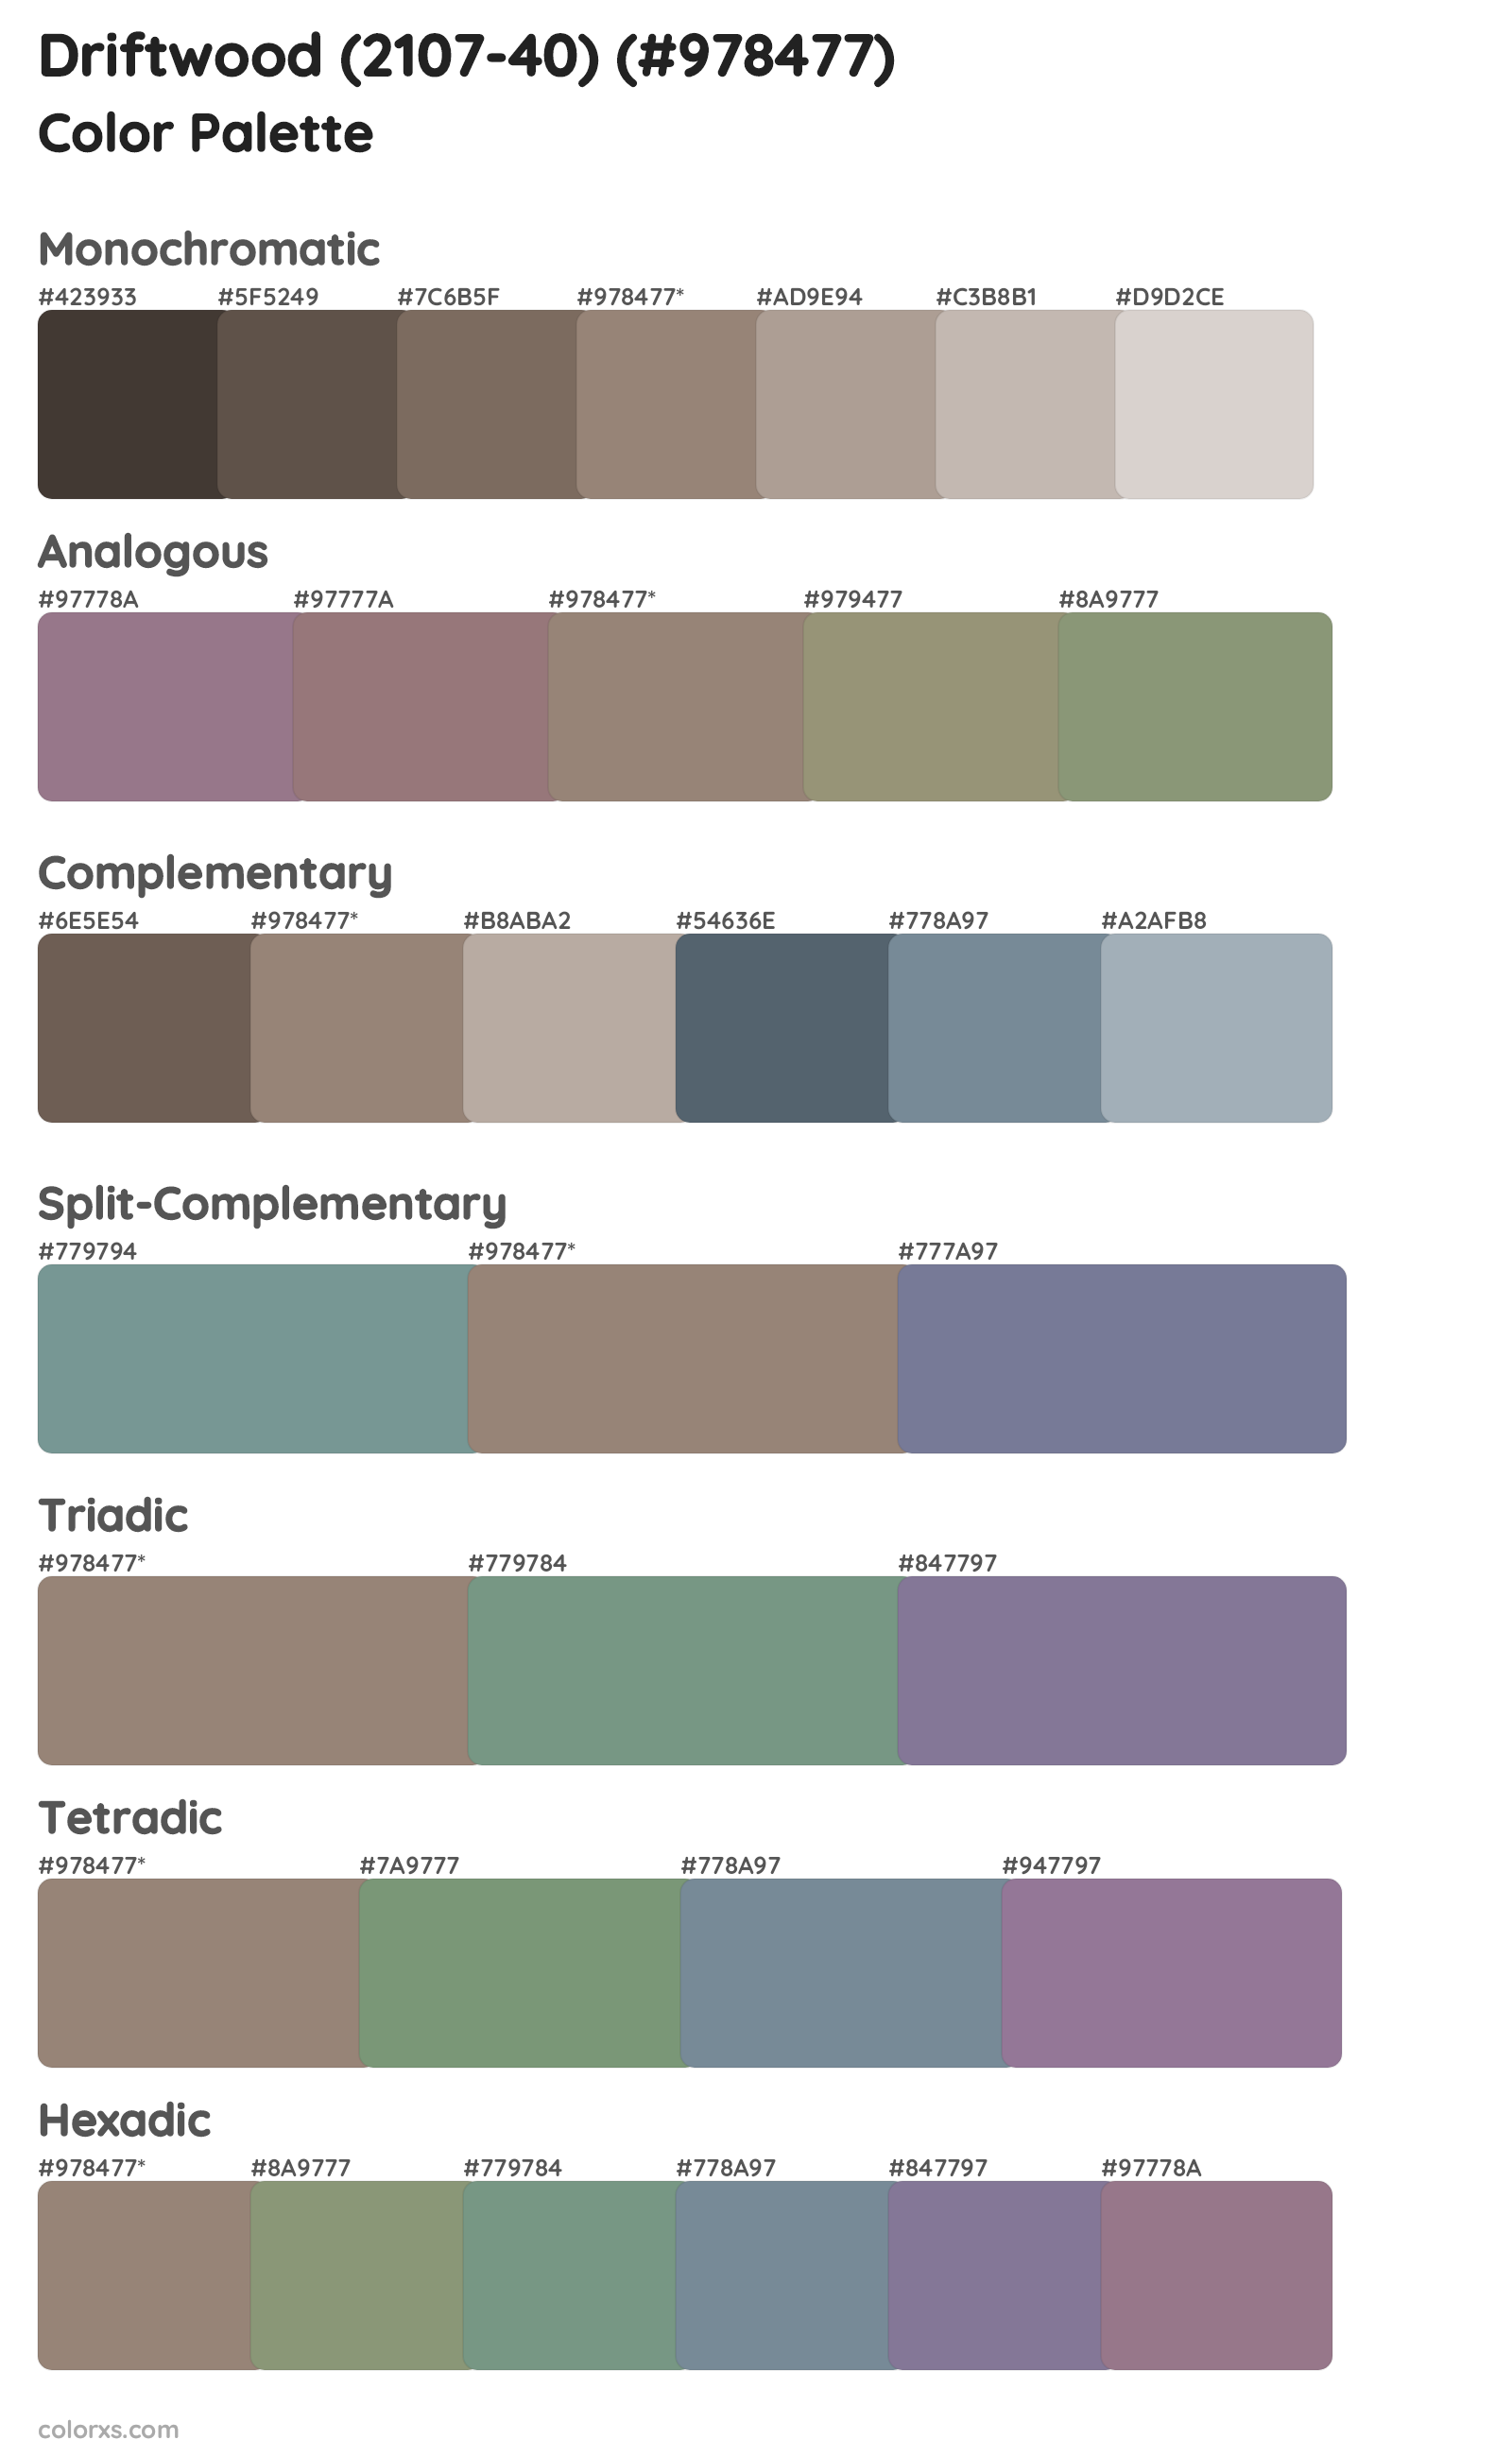 Driftwood (2107-40) Color Scheme Palettes